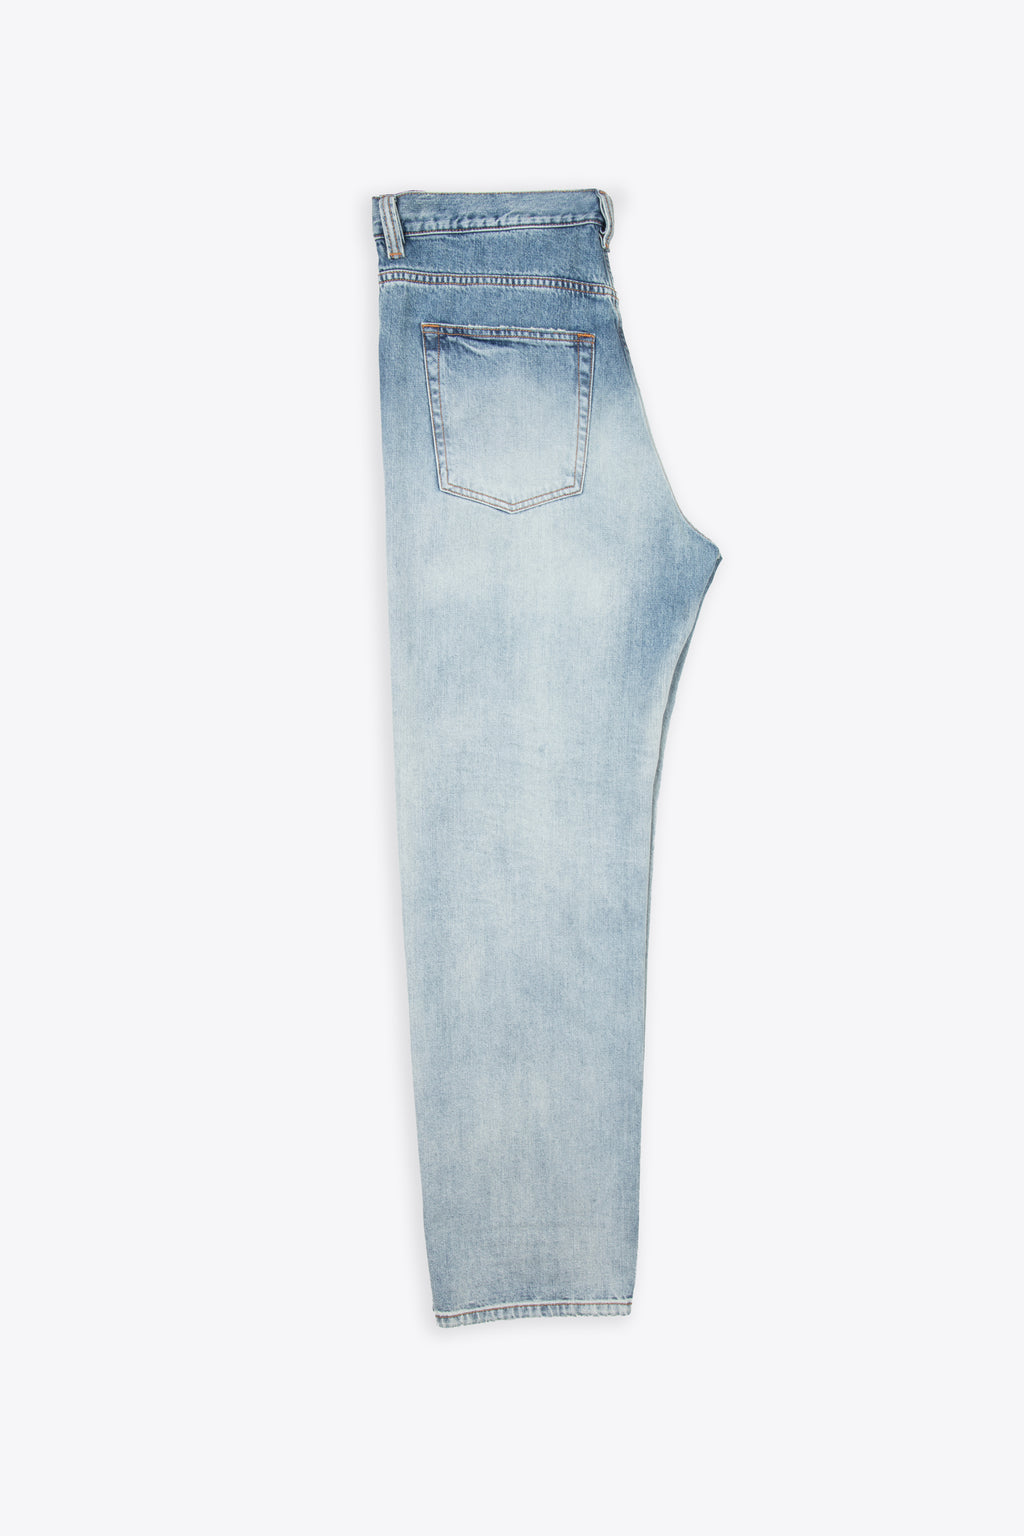 alt-image__Washed-light-blue-loose-fit-jeans---2010-D-Macs